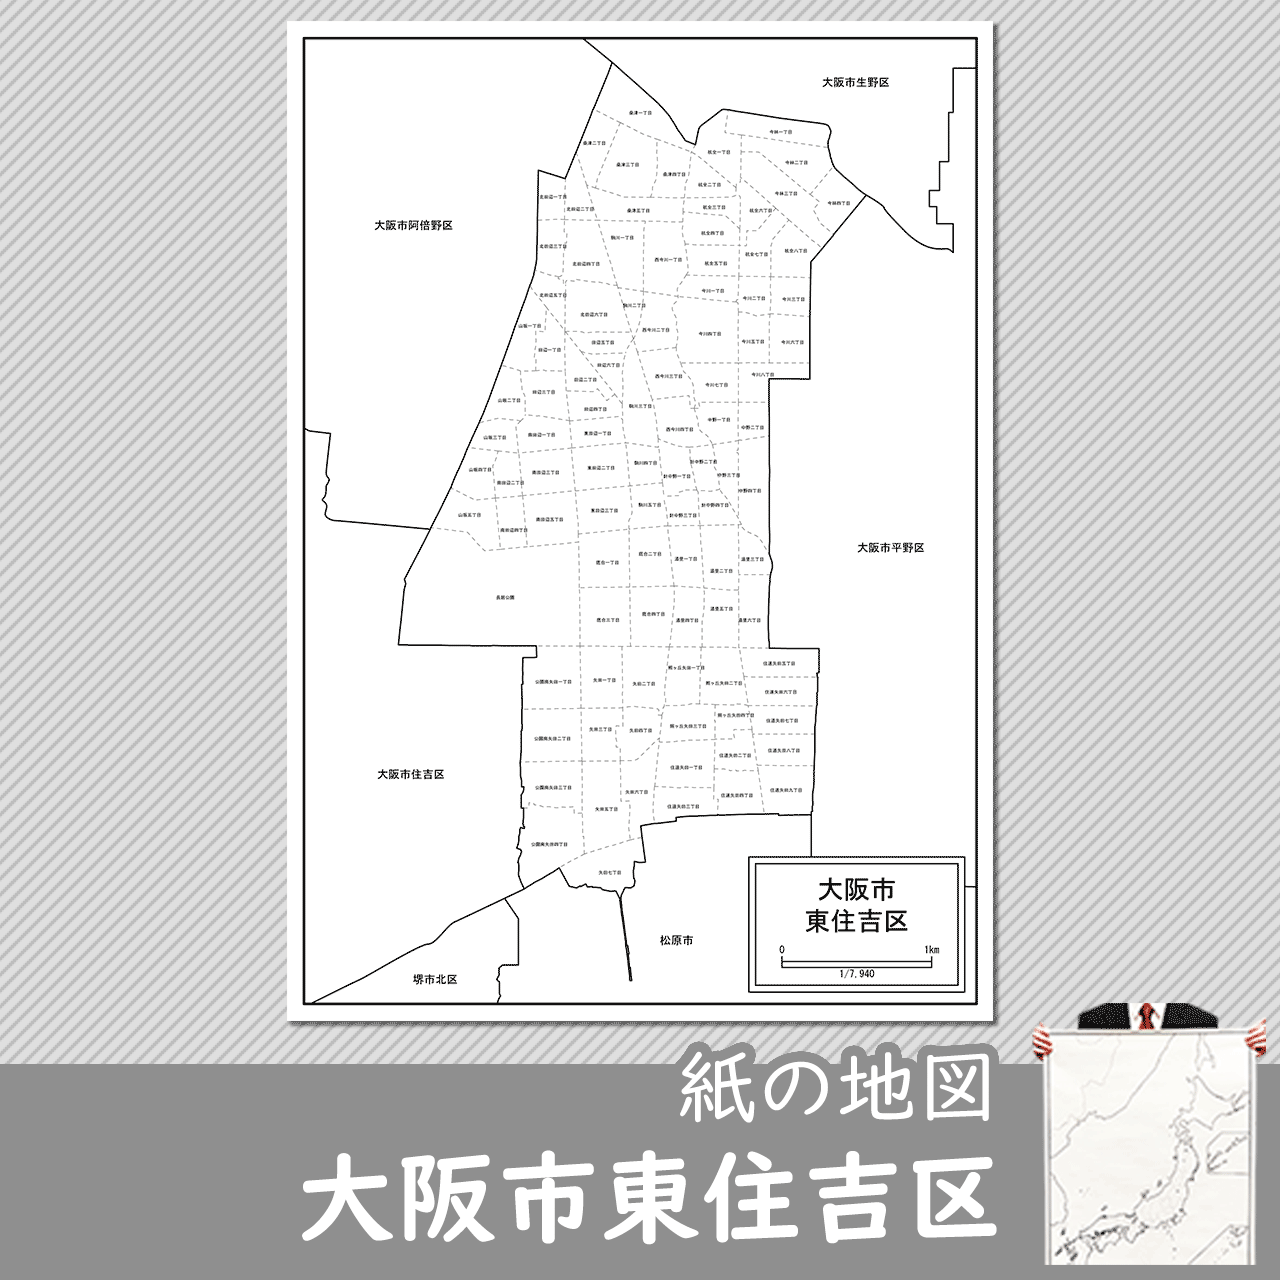 大阪市東住吉区の紙の白地図